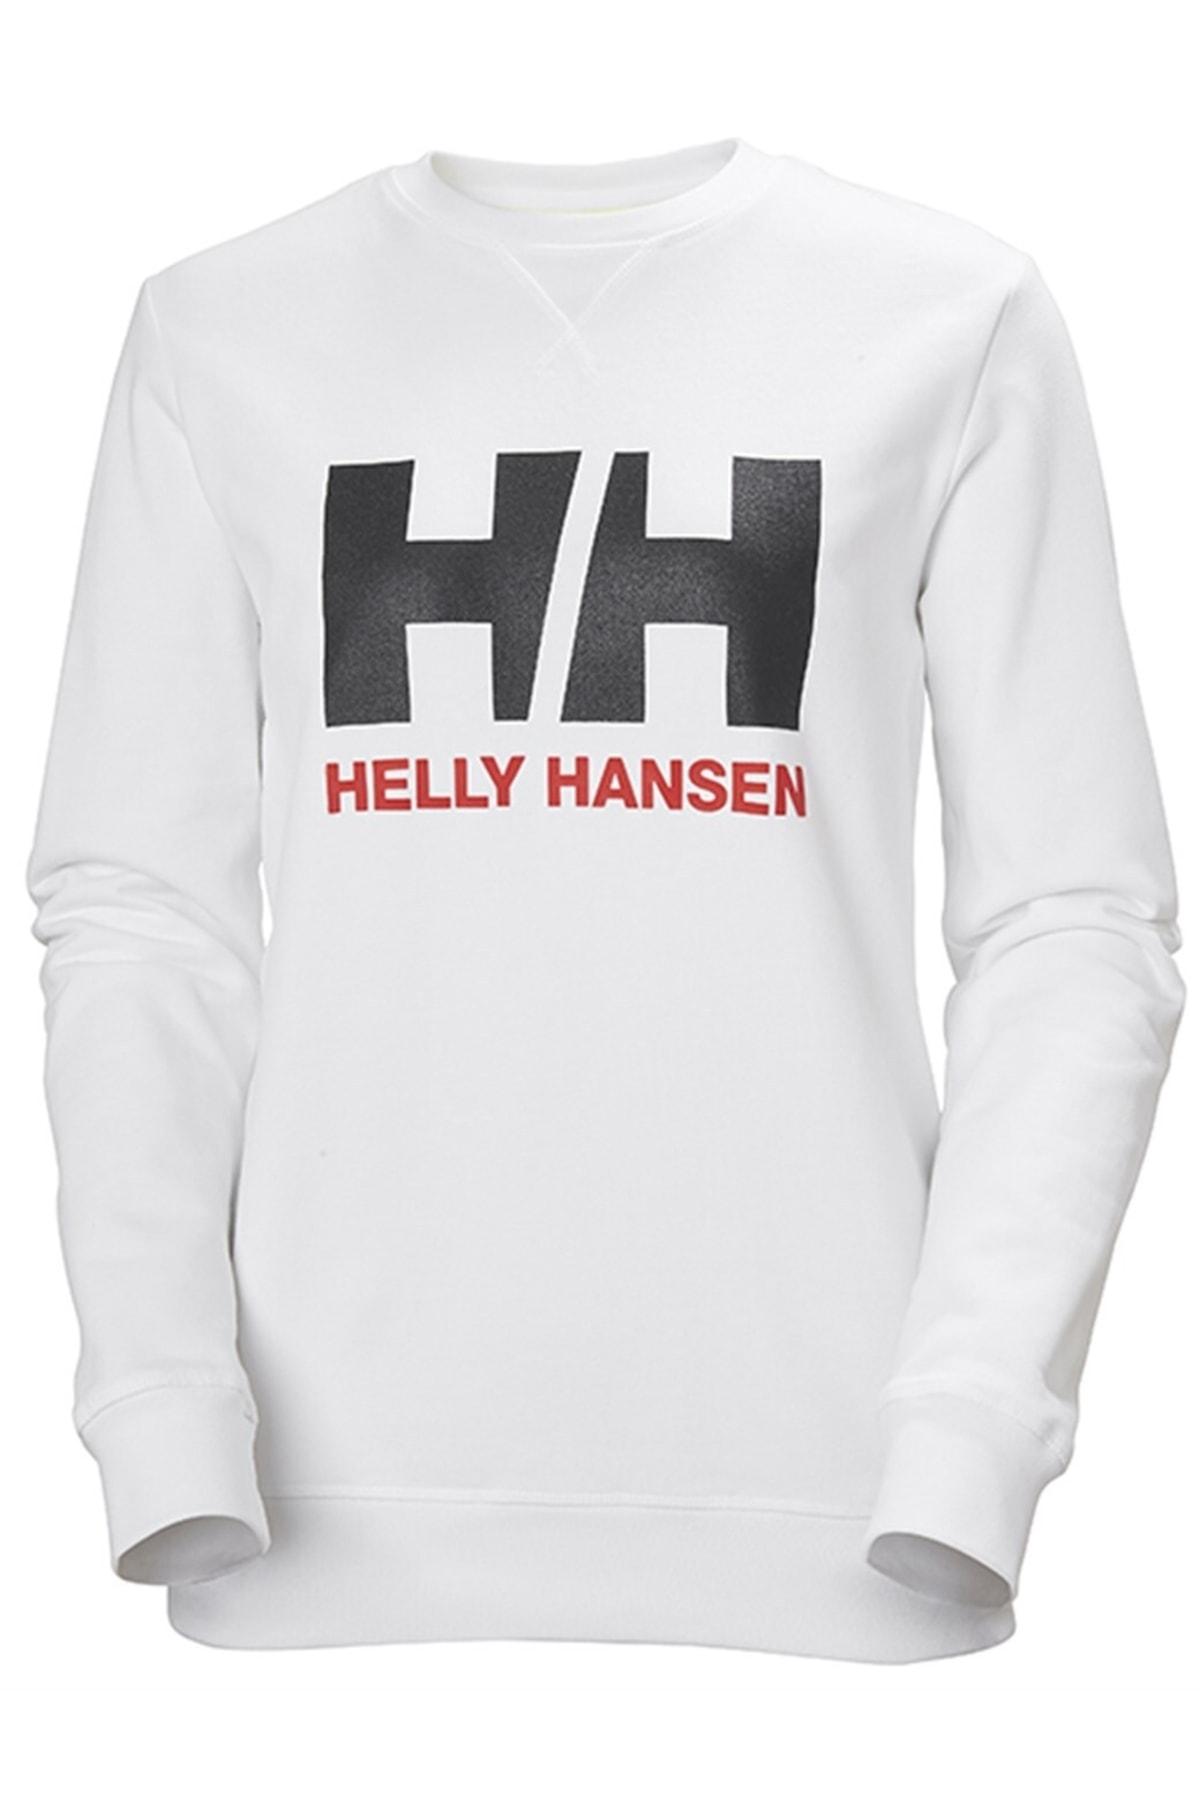 Helly Hansen Kadın Beyaz Logo Crew Sweat - 139.90 TL + kargo